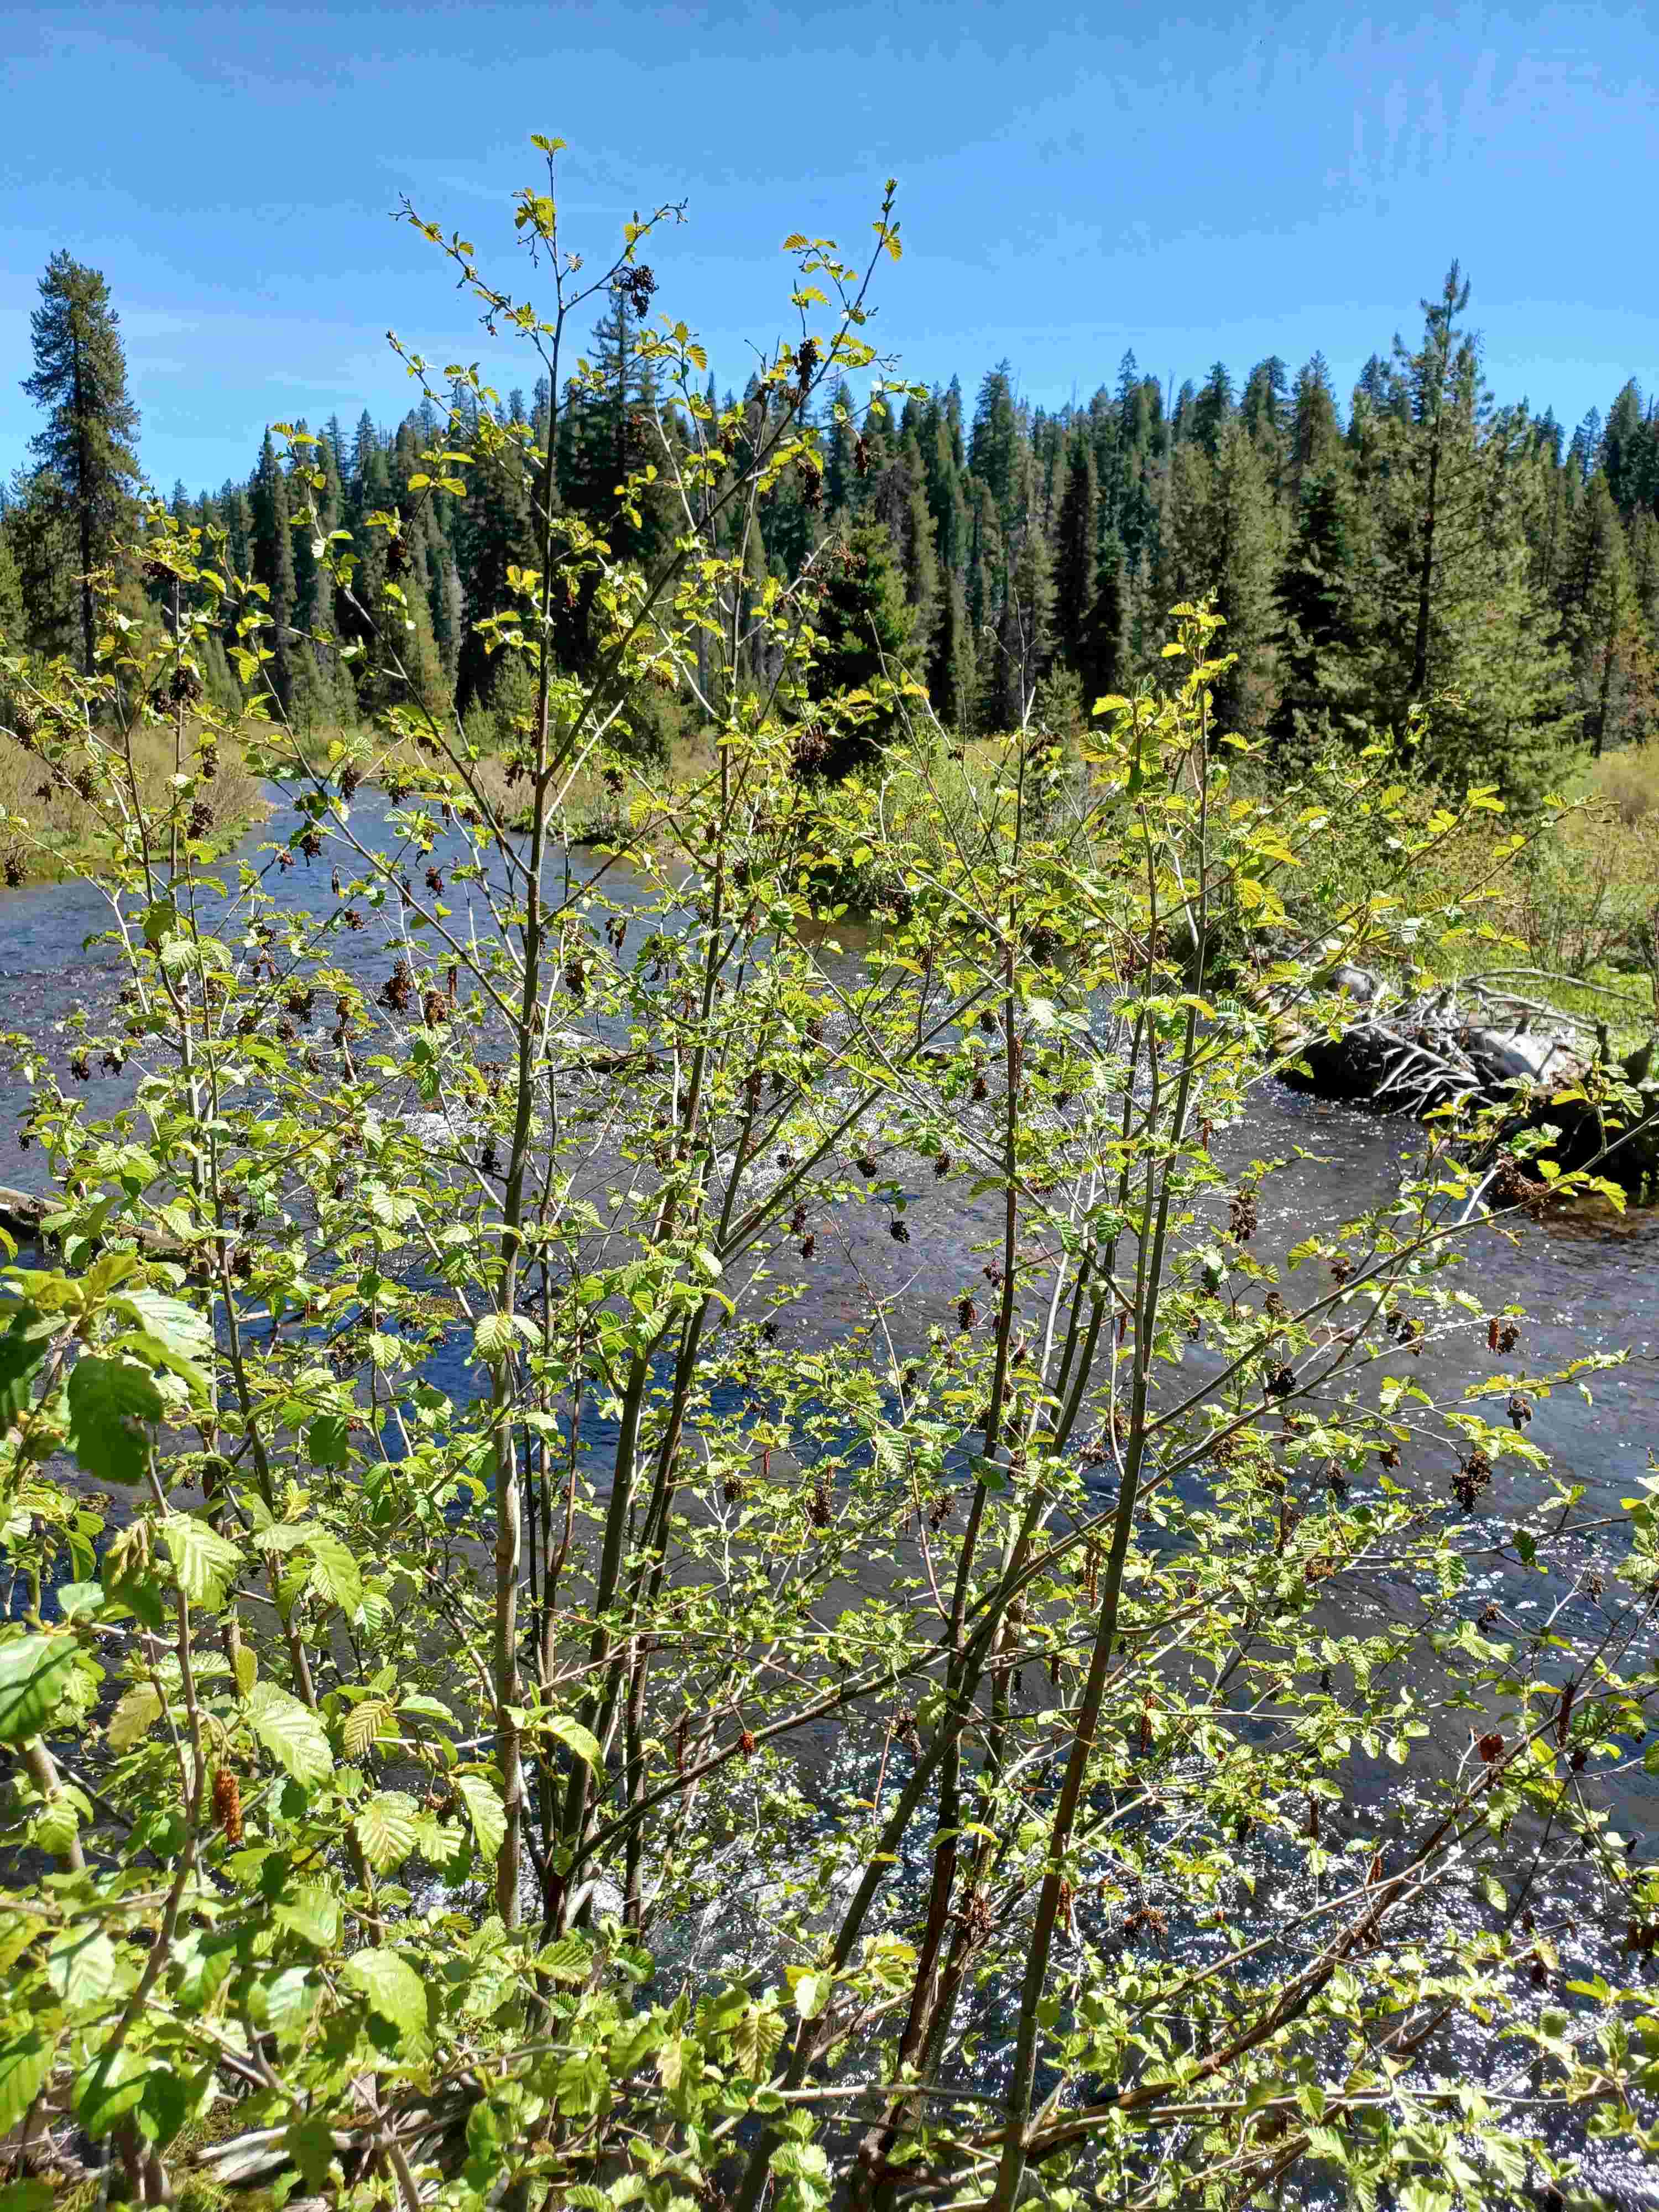 Alnus viridis riverside on a stream at mid-elevation near Mt. Hood, OR.